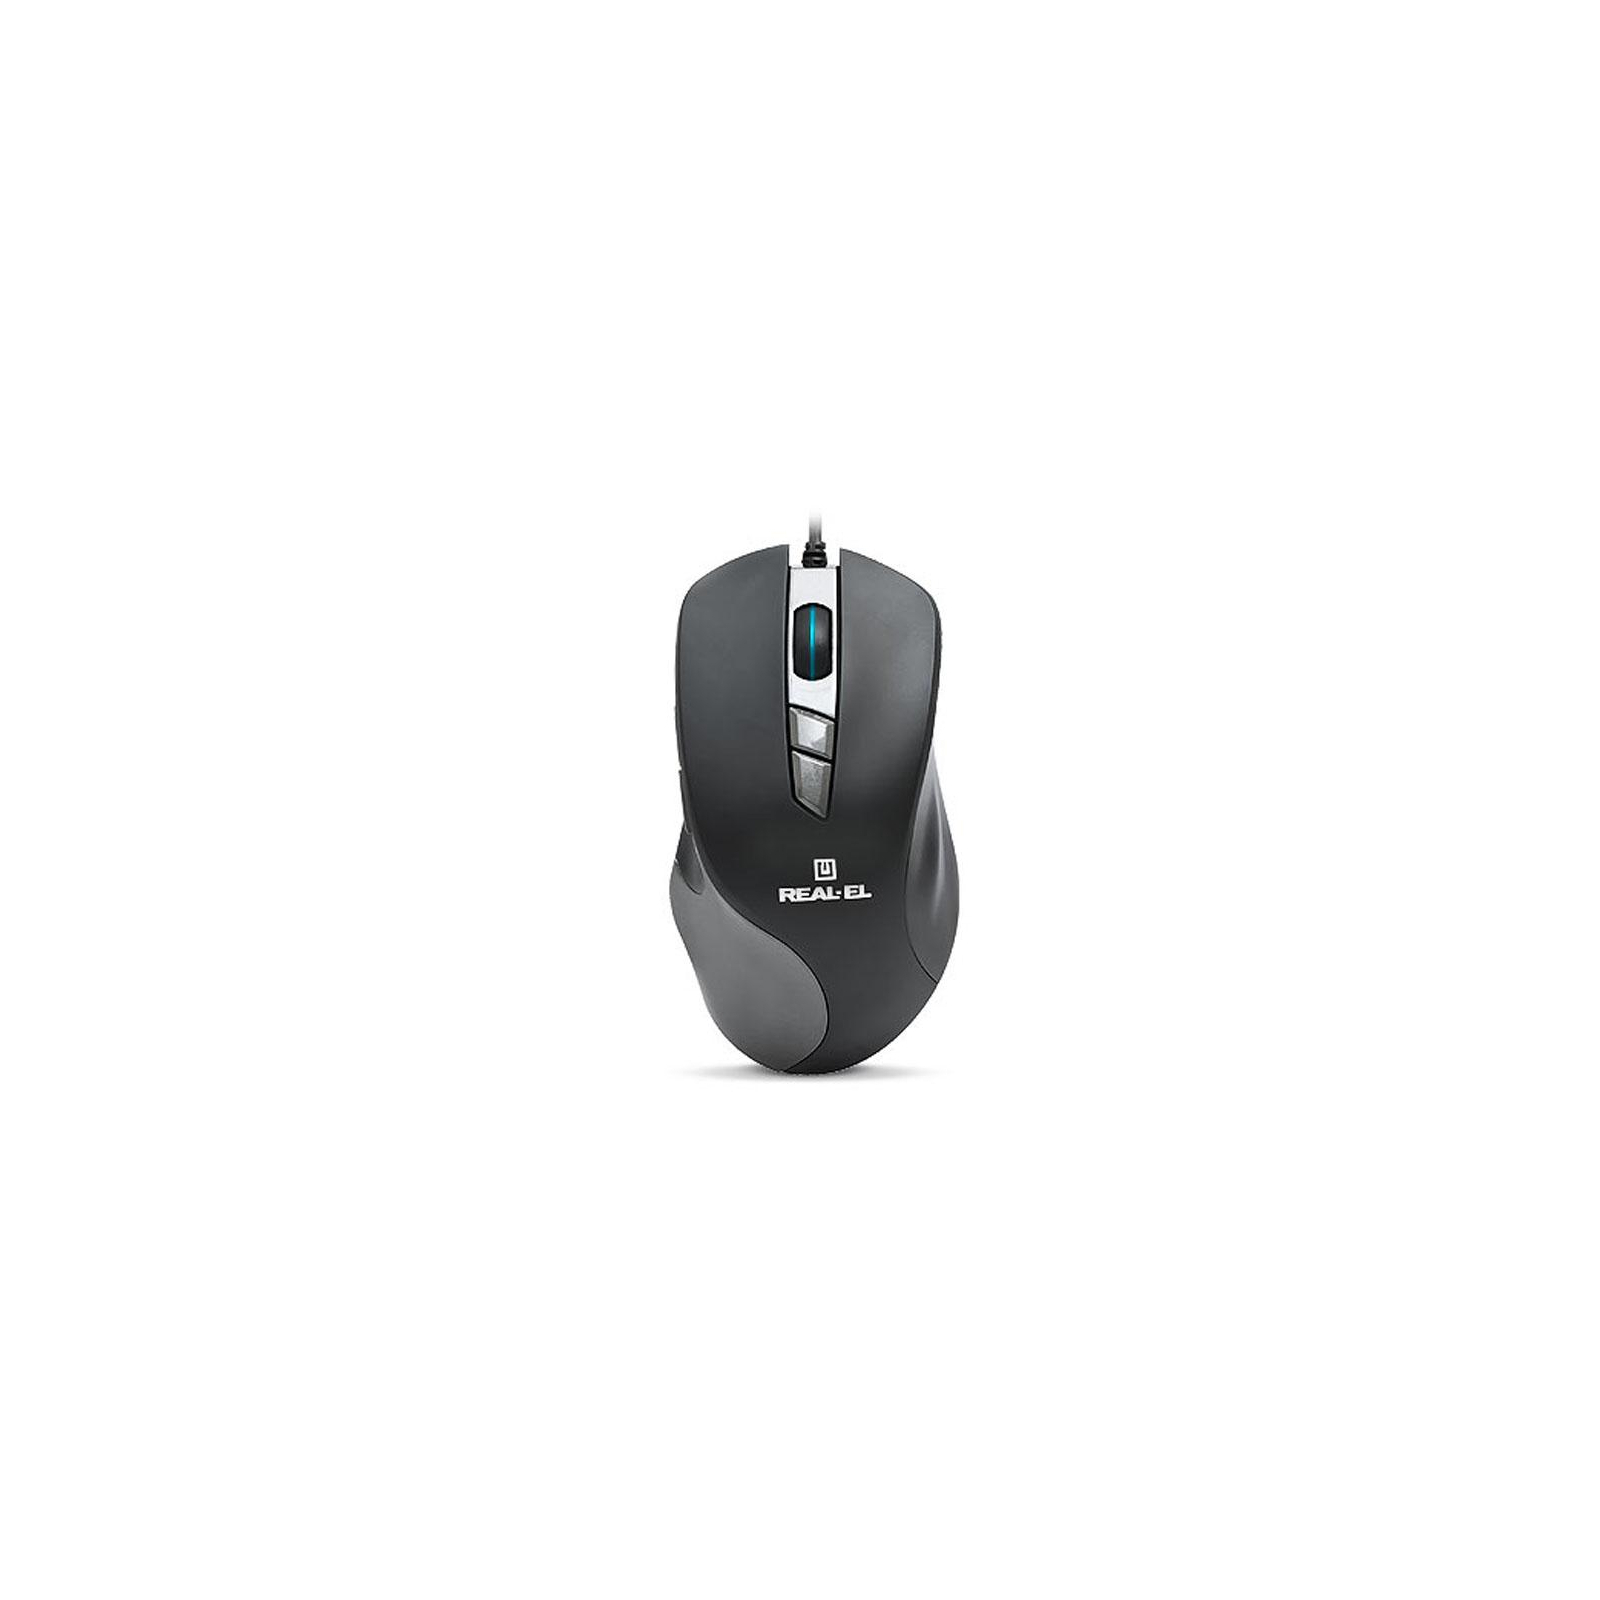 Мышка REAL-EL RM-780 Gaming RGB, black-grey изображение 4